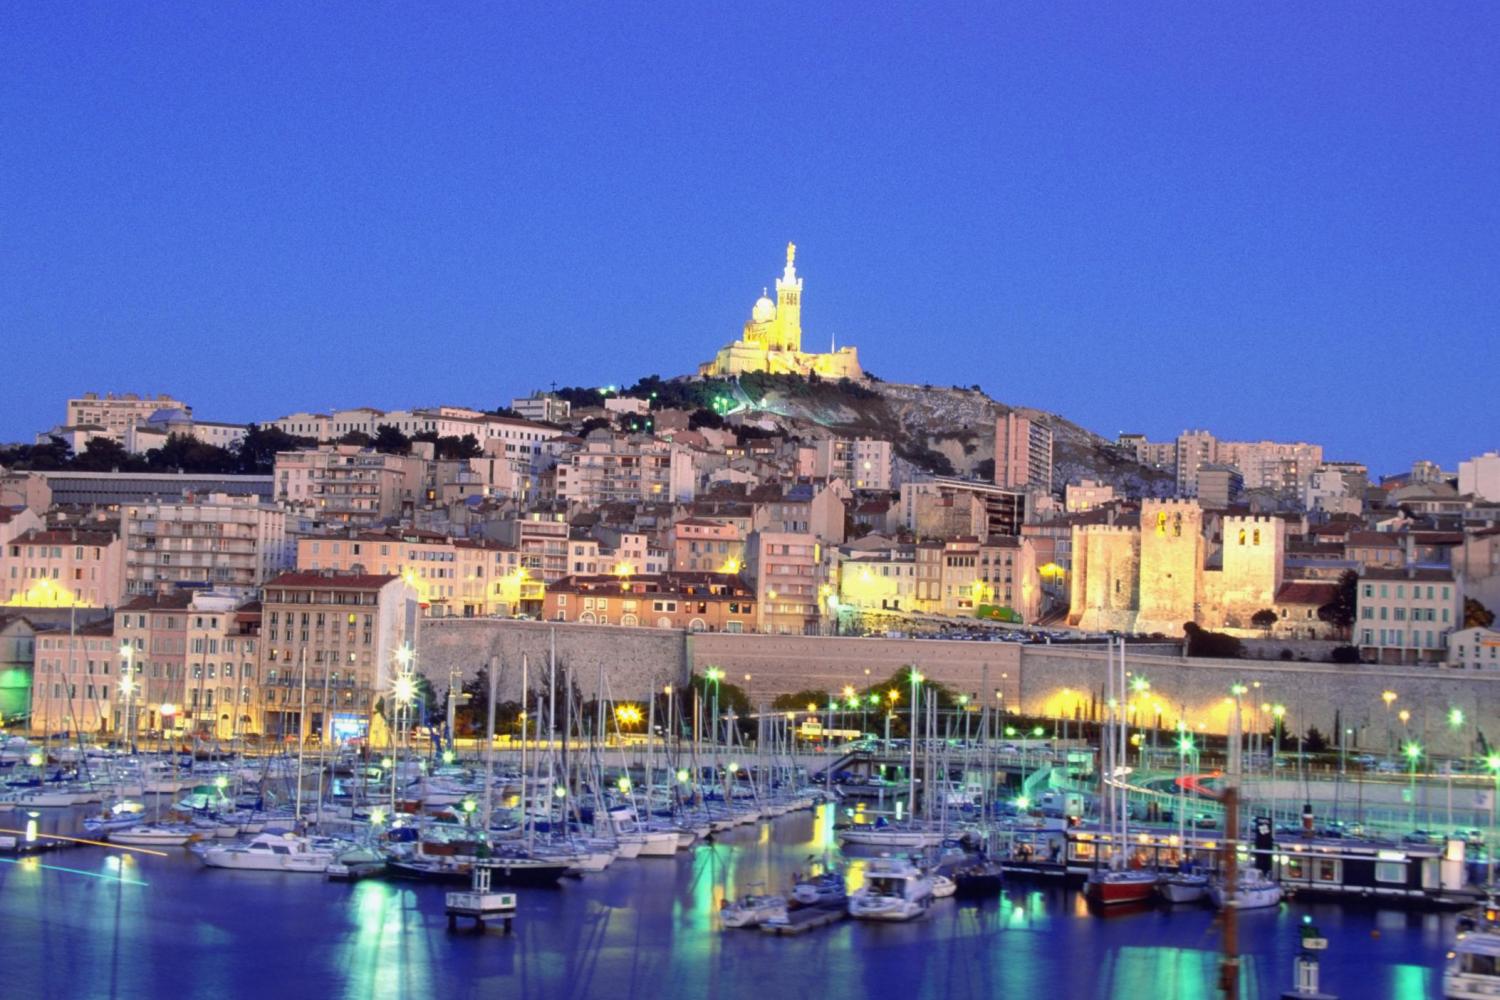 Marseilles to host Manifesta